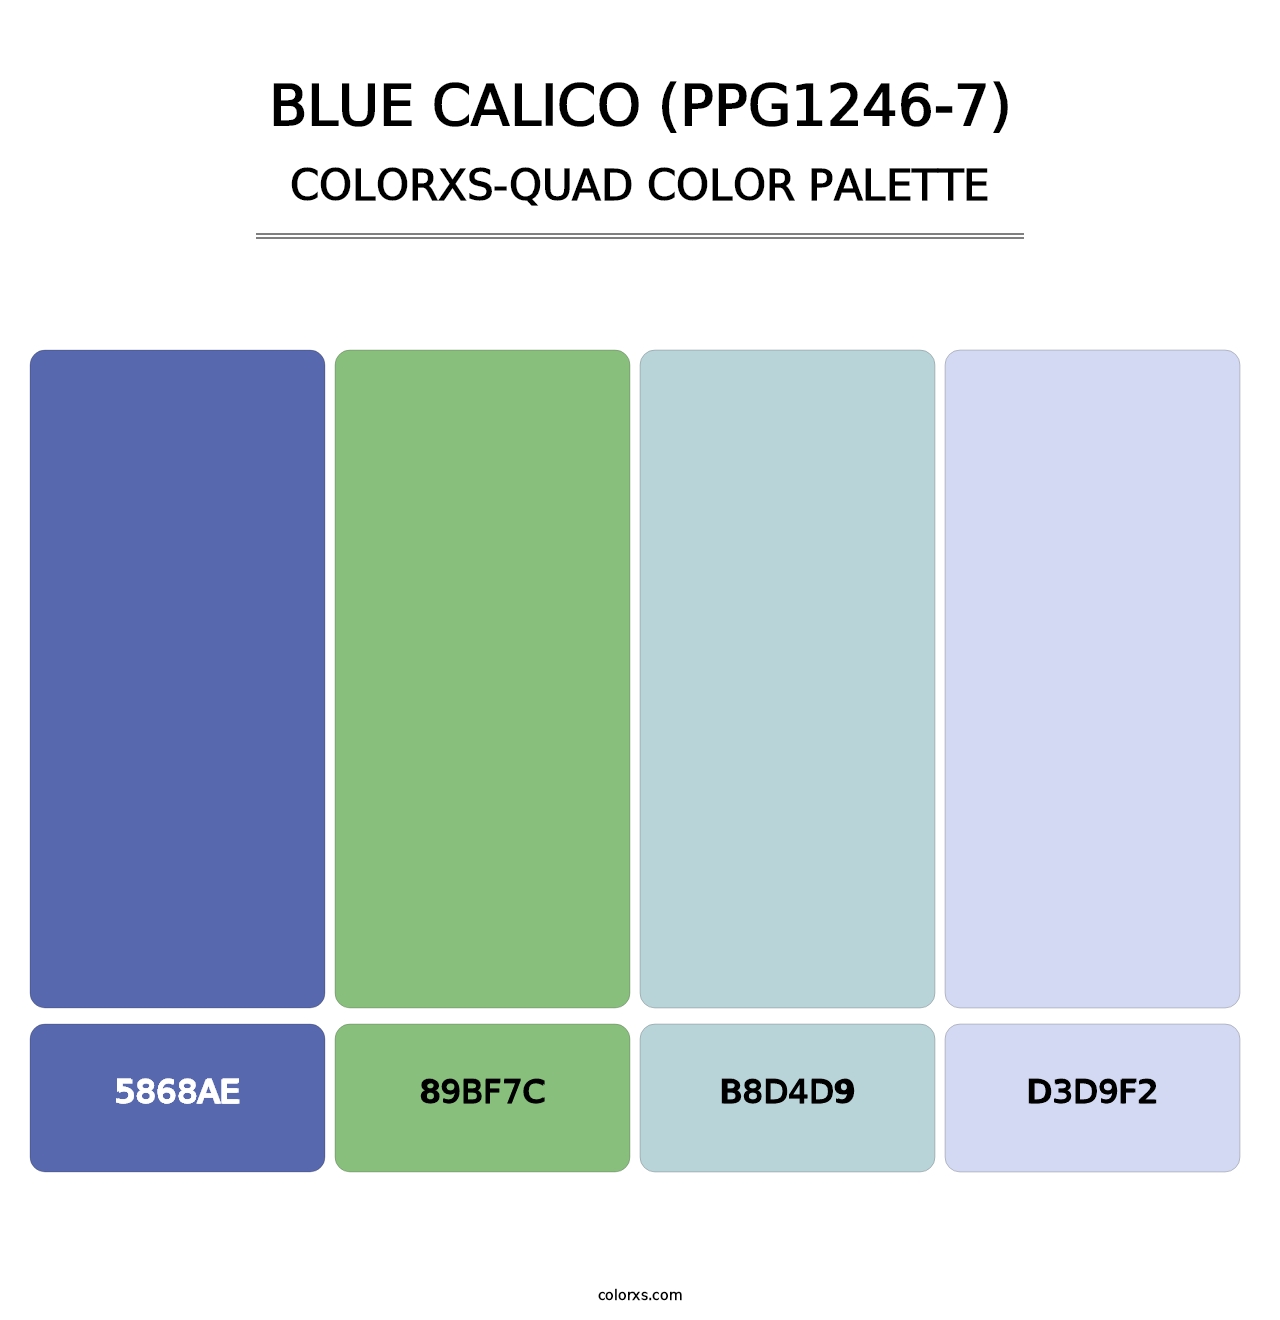 Blue Calico (PPG1246-7) - Colorxs Quad Palette